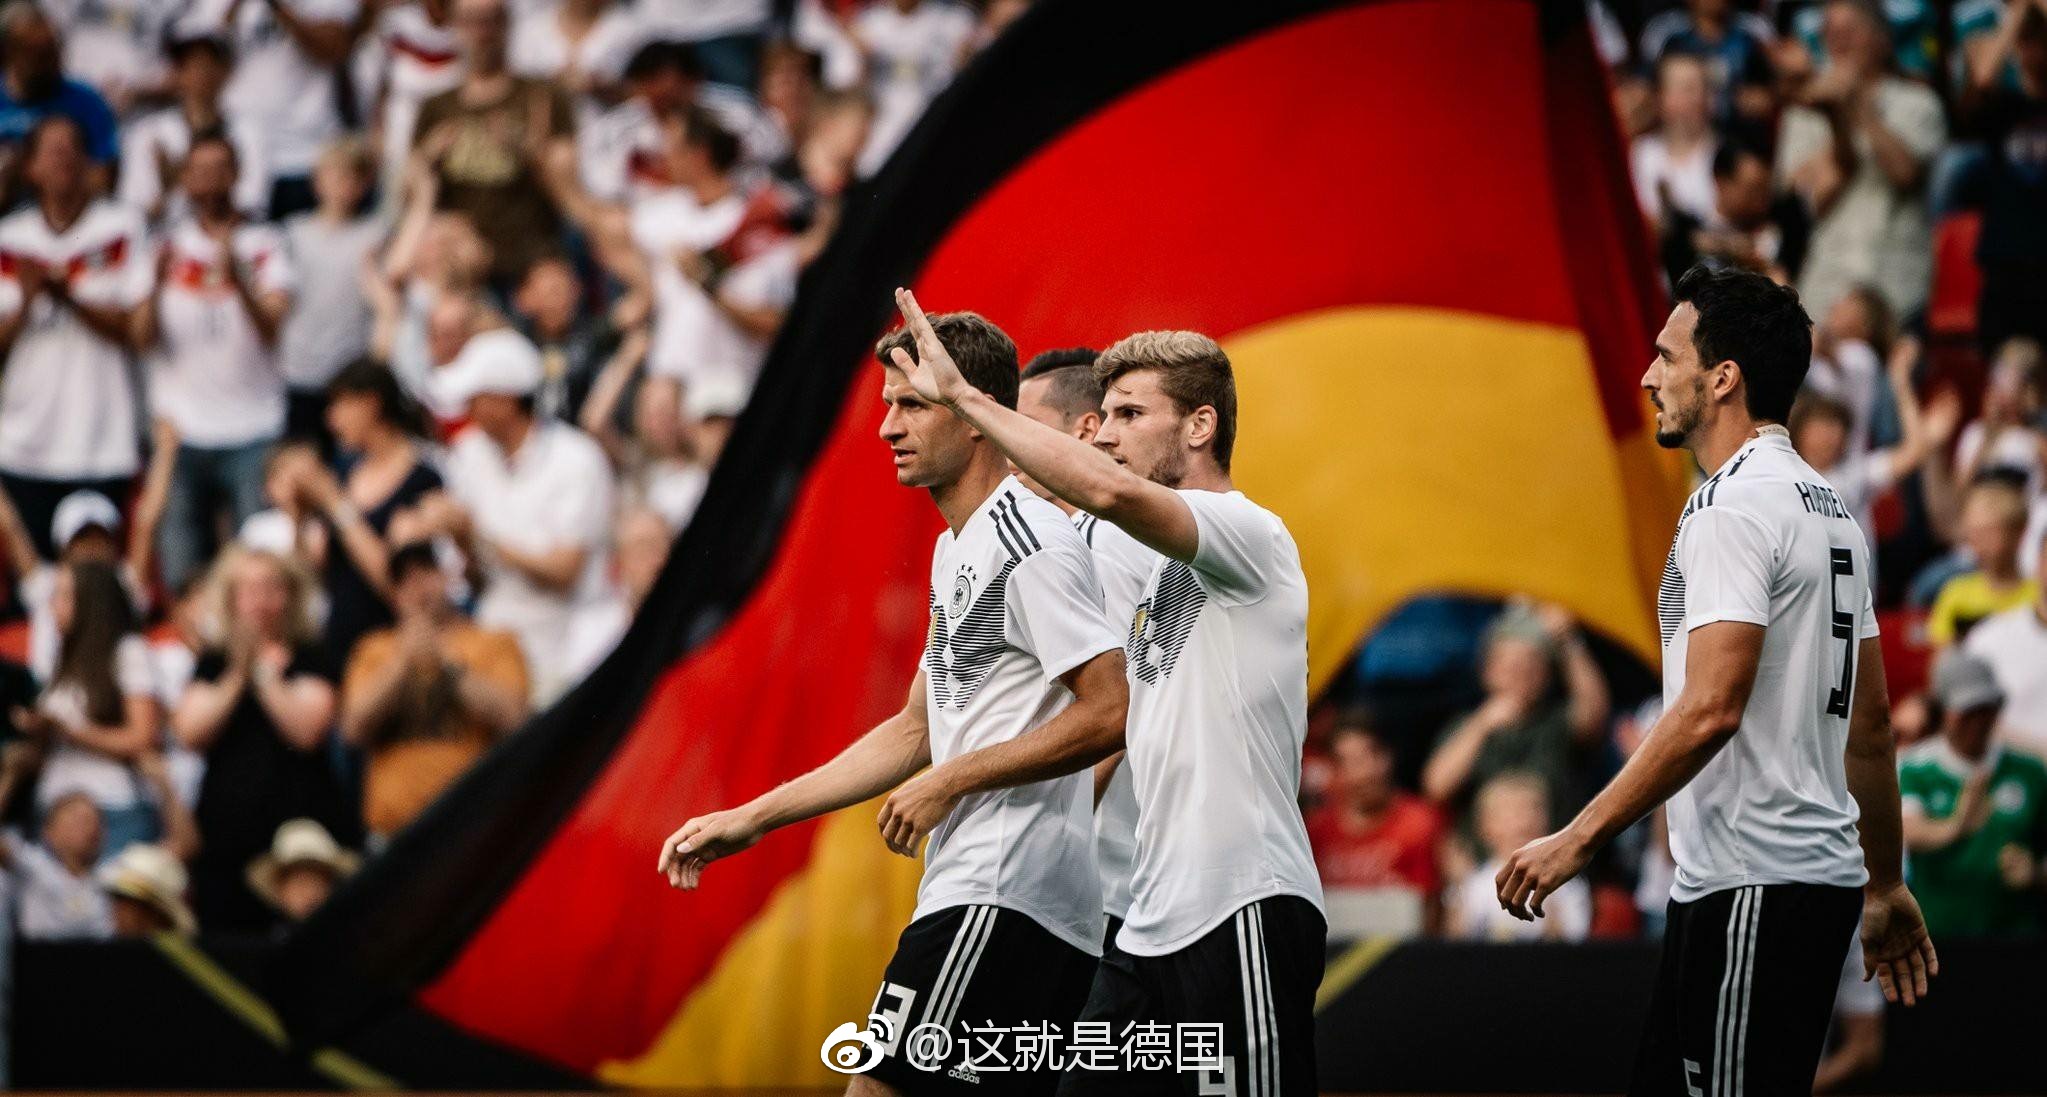 我记得上一届世界杯德国足球队就已经“改名”或者称为“die Mannscha